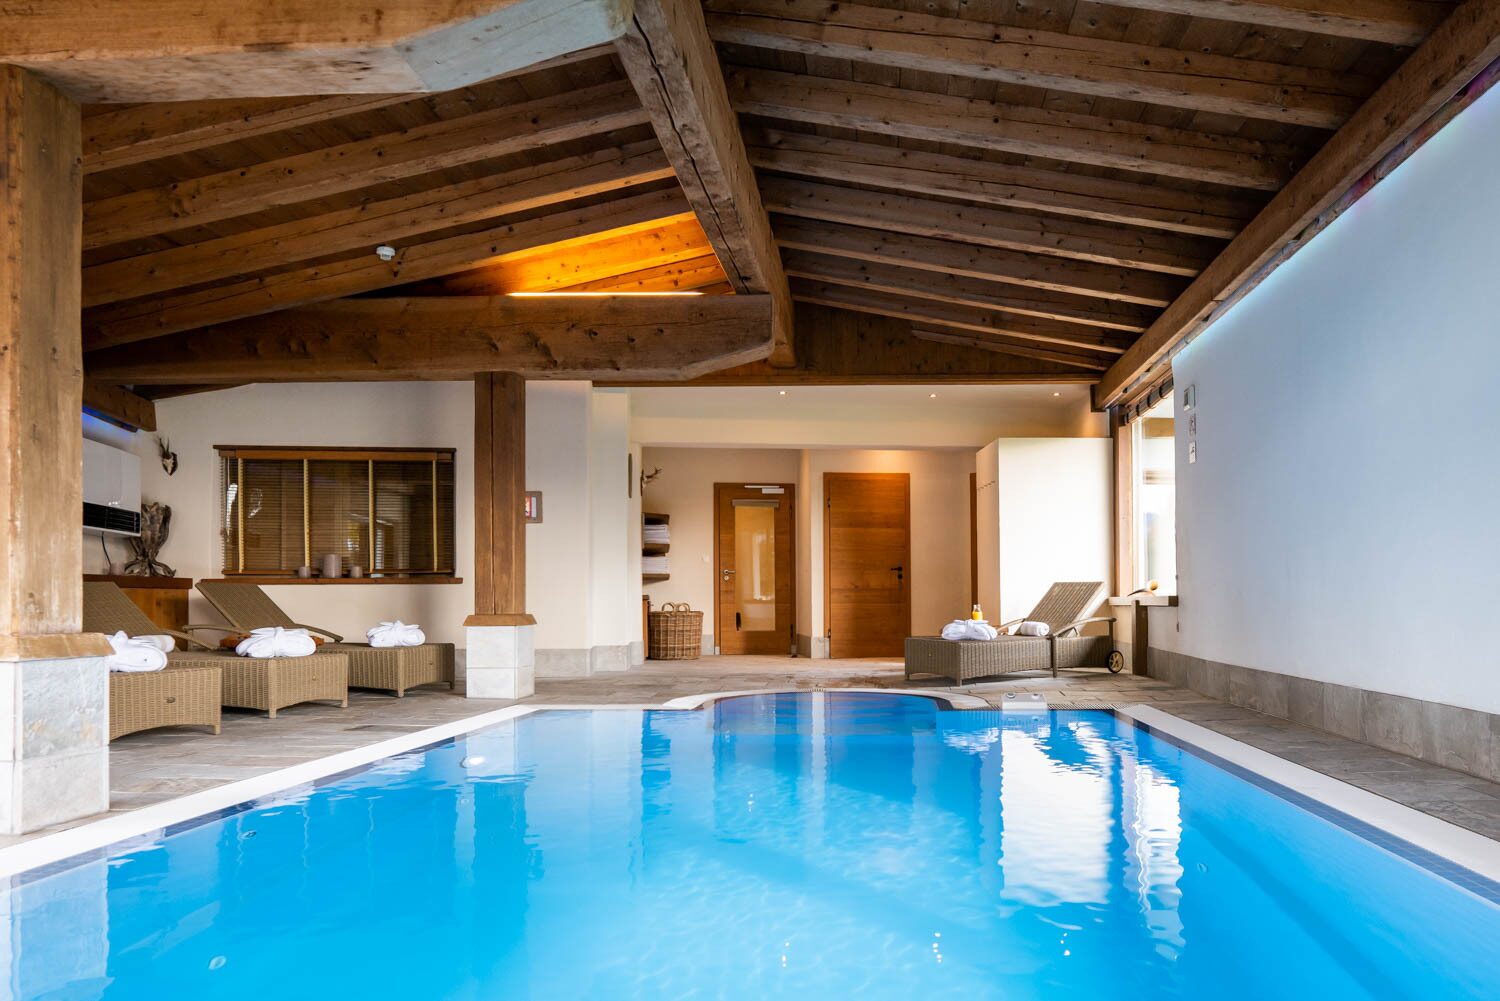 Swimmingpool at Oasis Princess Bergfrieden in Tyrol